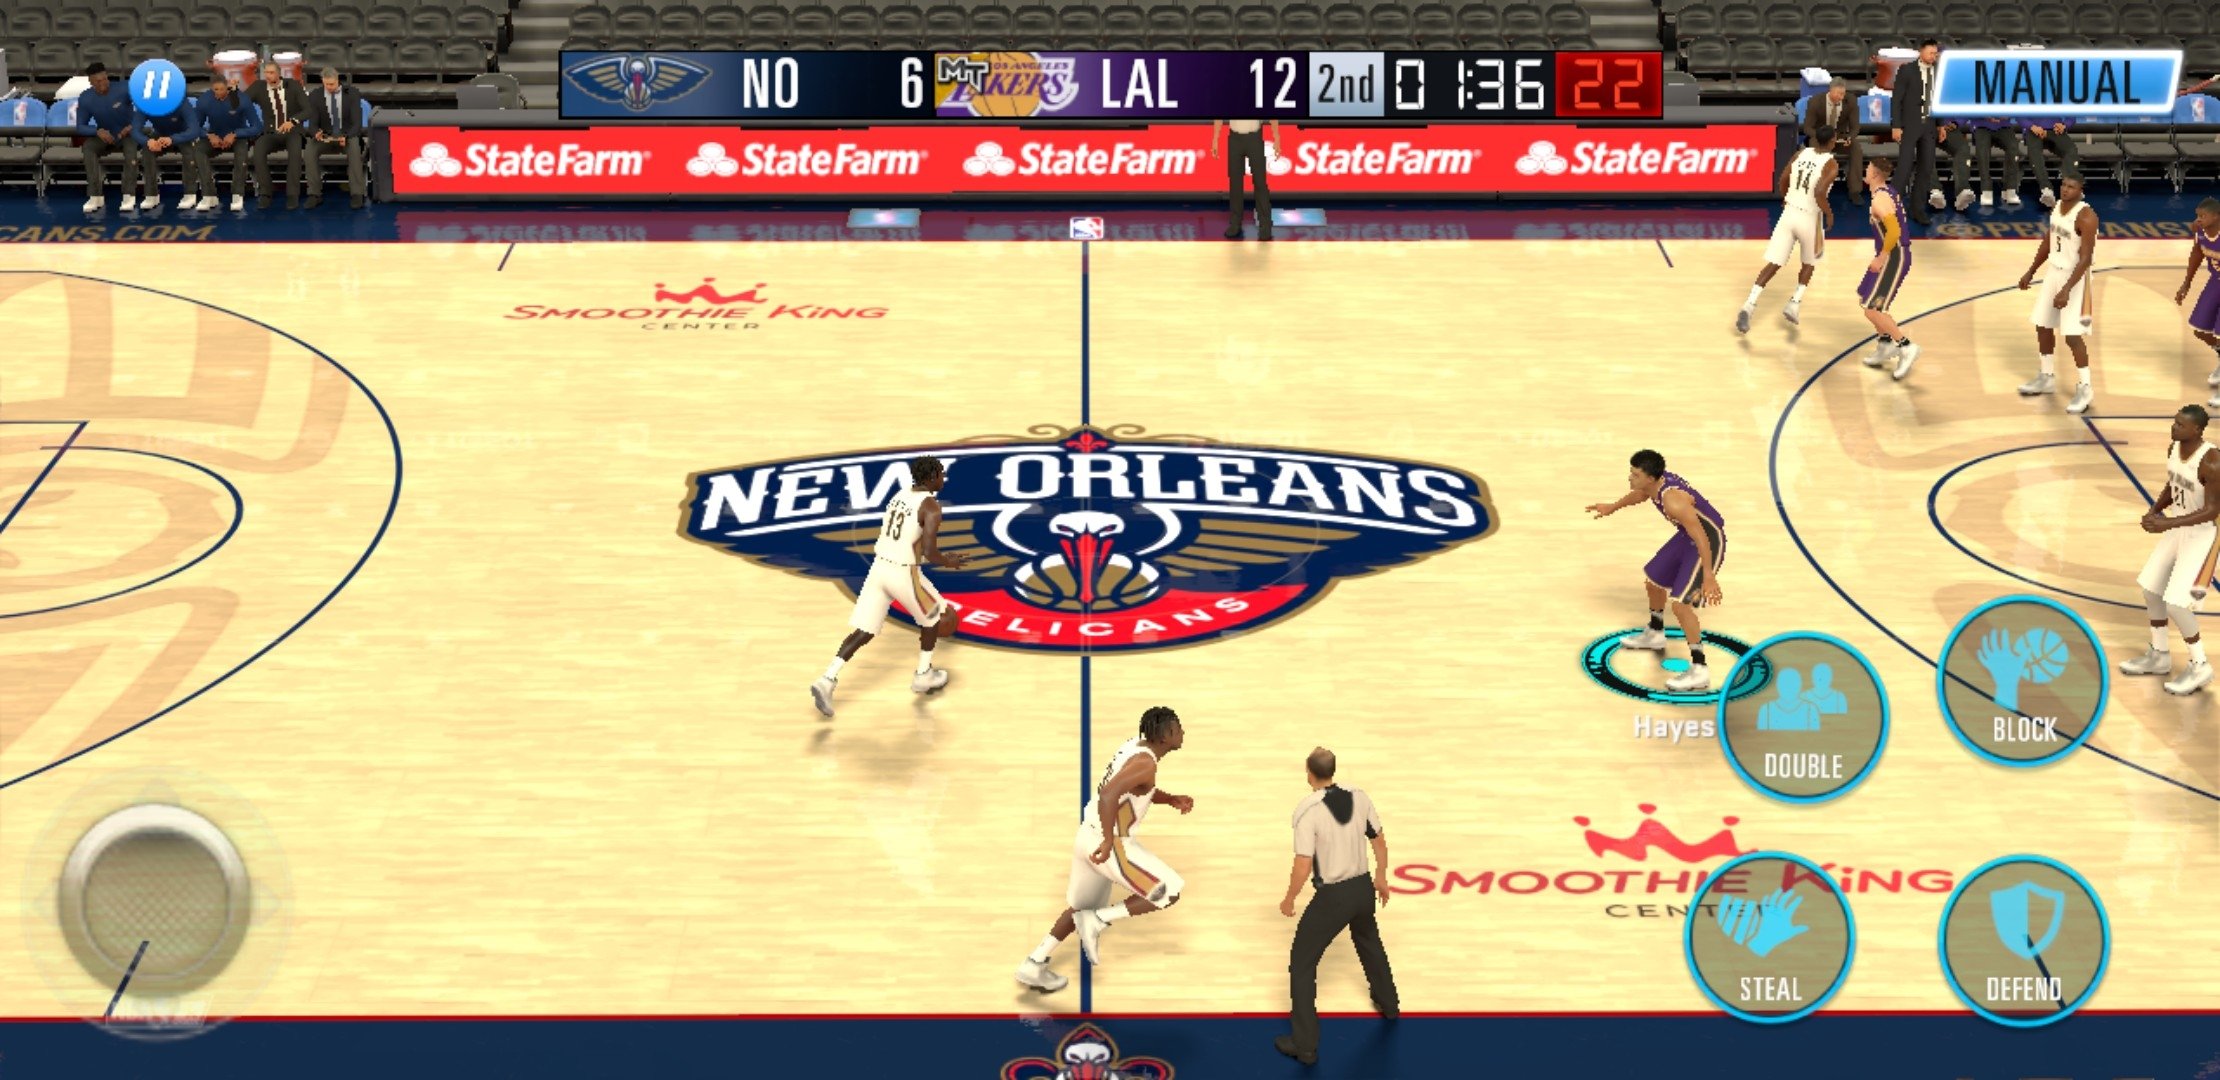 Baixar & Jogar NBA 2K Mobile Jogo de Basquete no PC & Mac (Emulador)